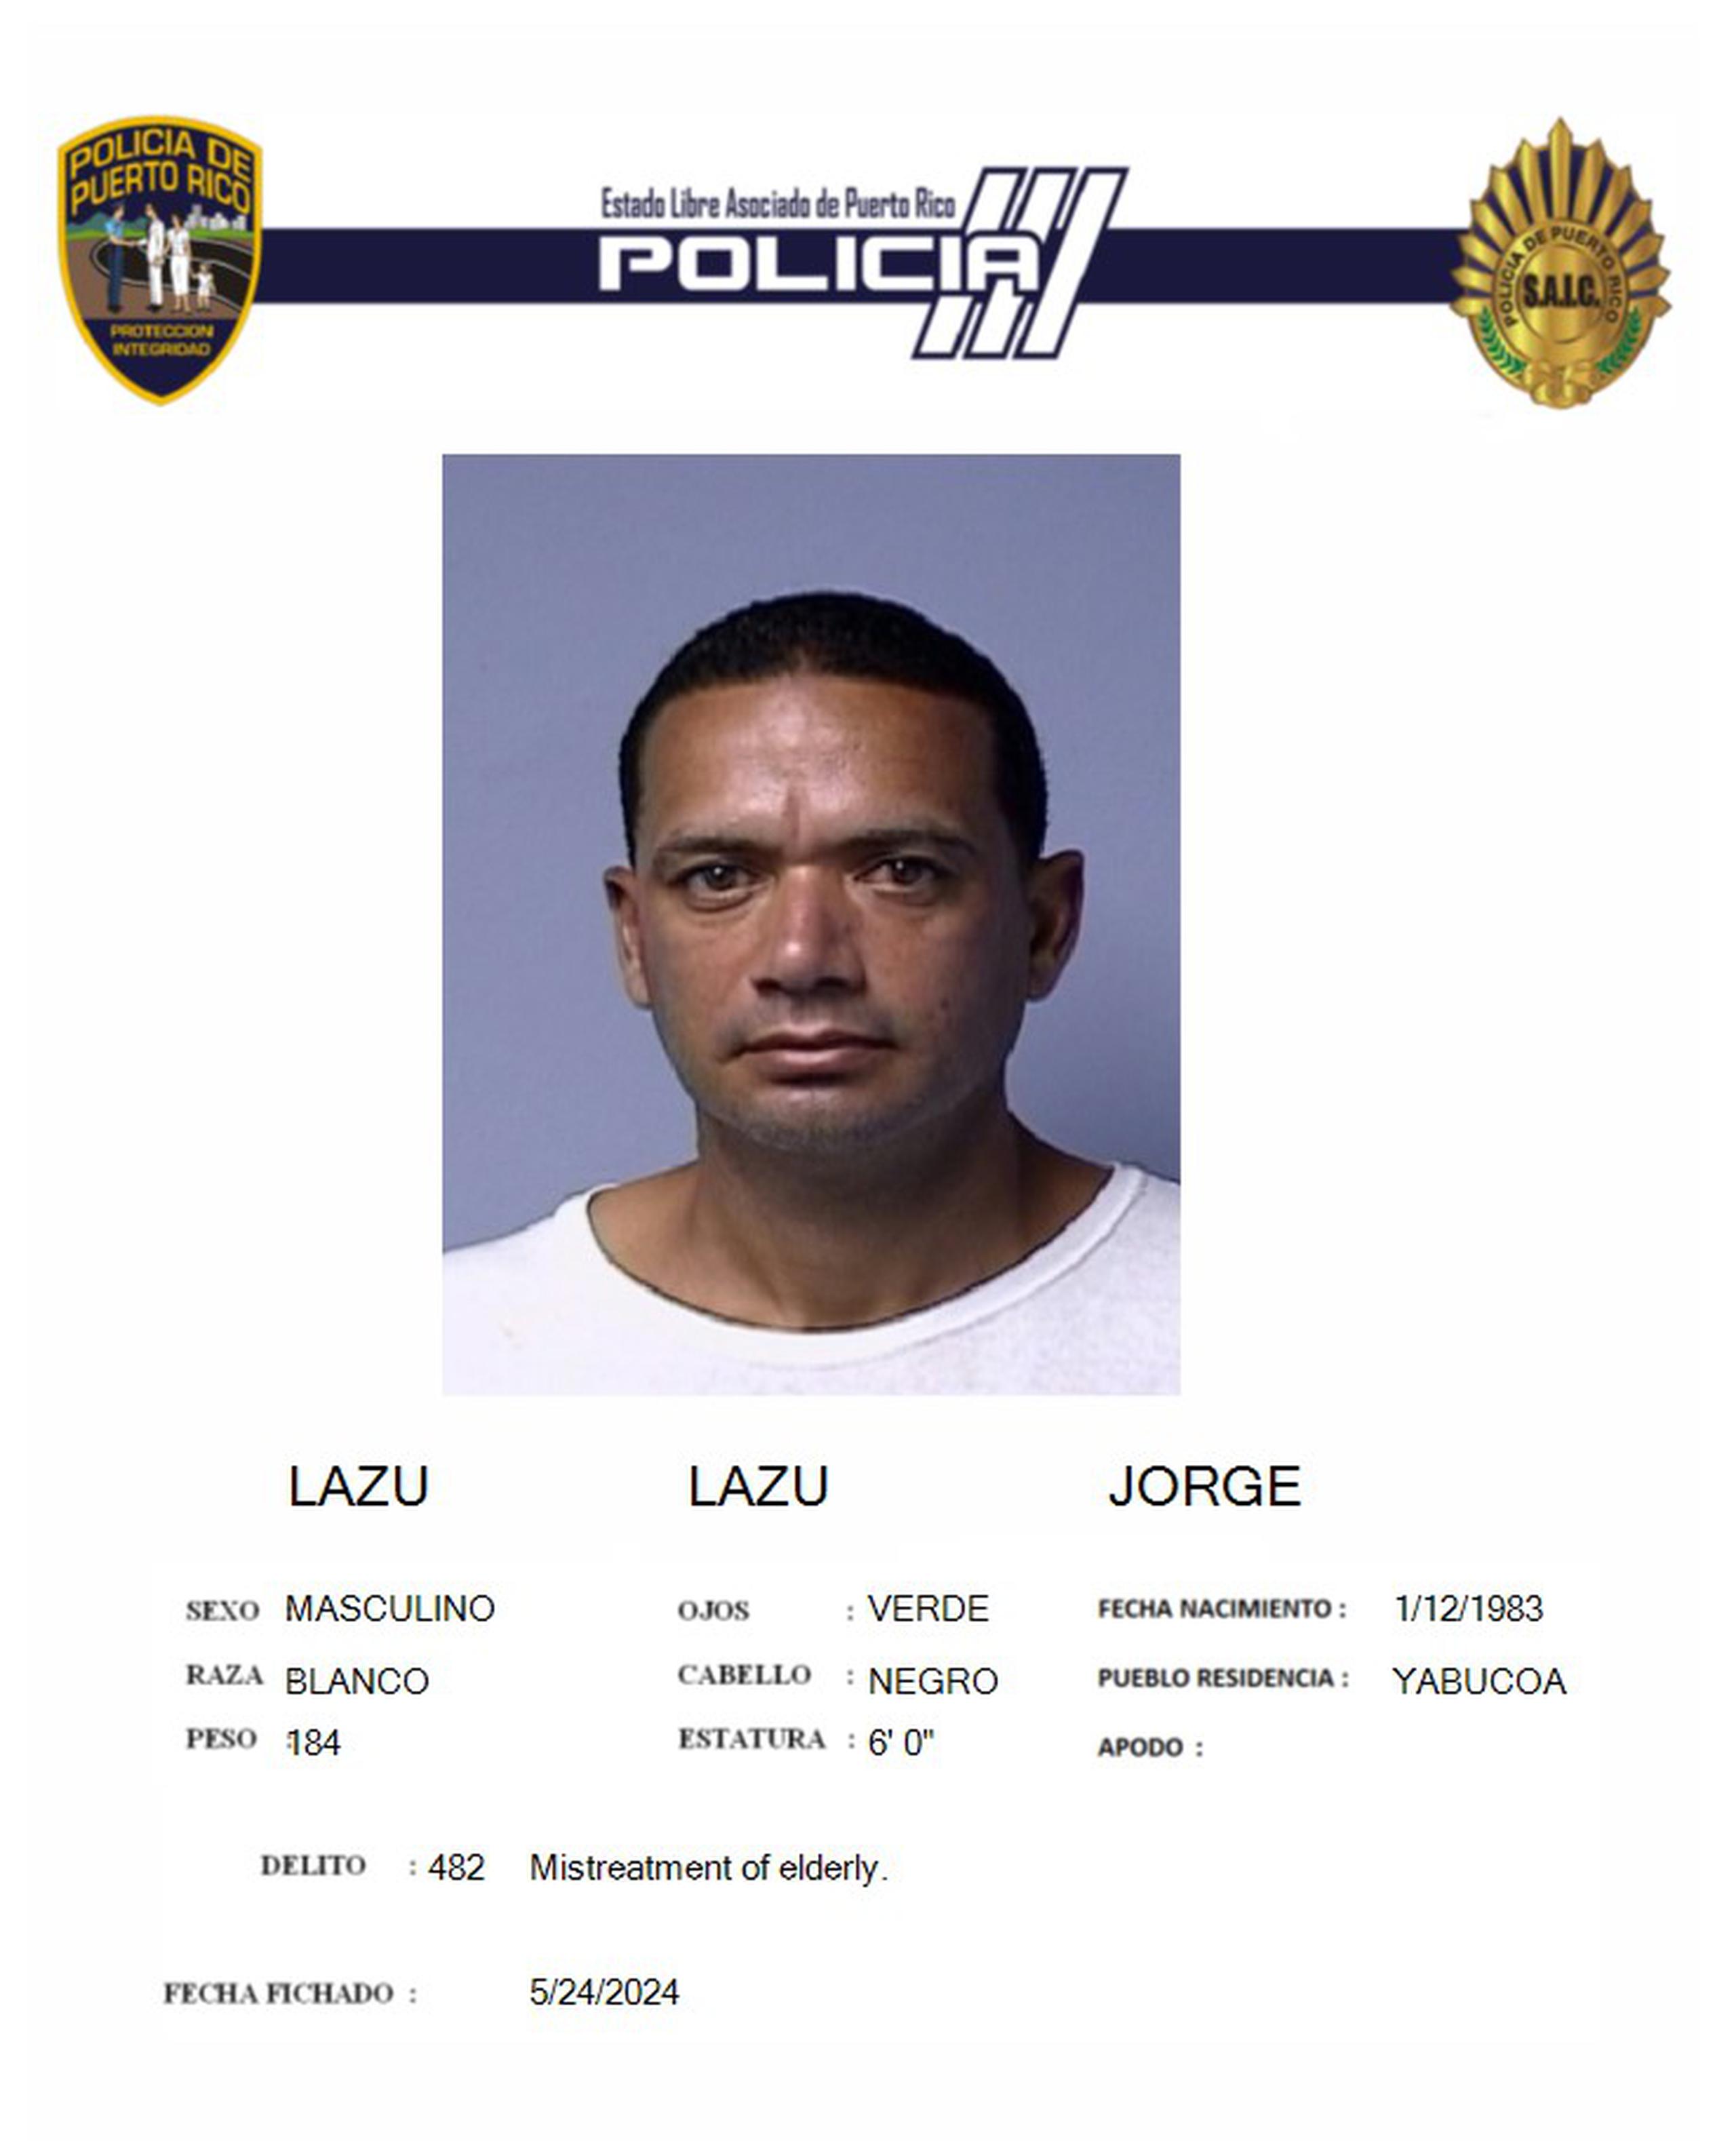 Ficha de Jorge Lazú Lazú, de 41 años y residente de Yabucoa.